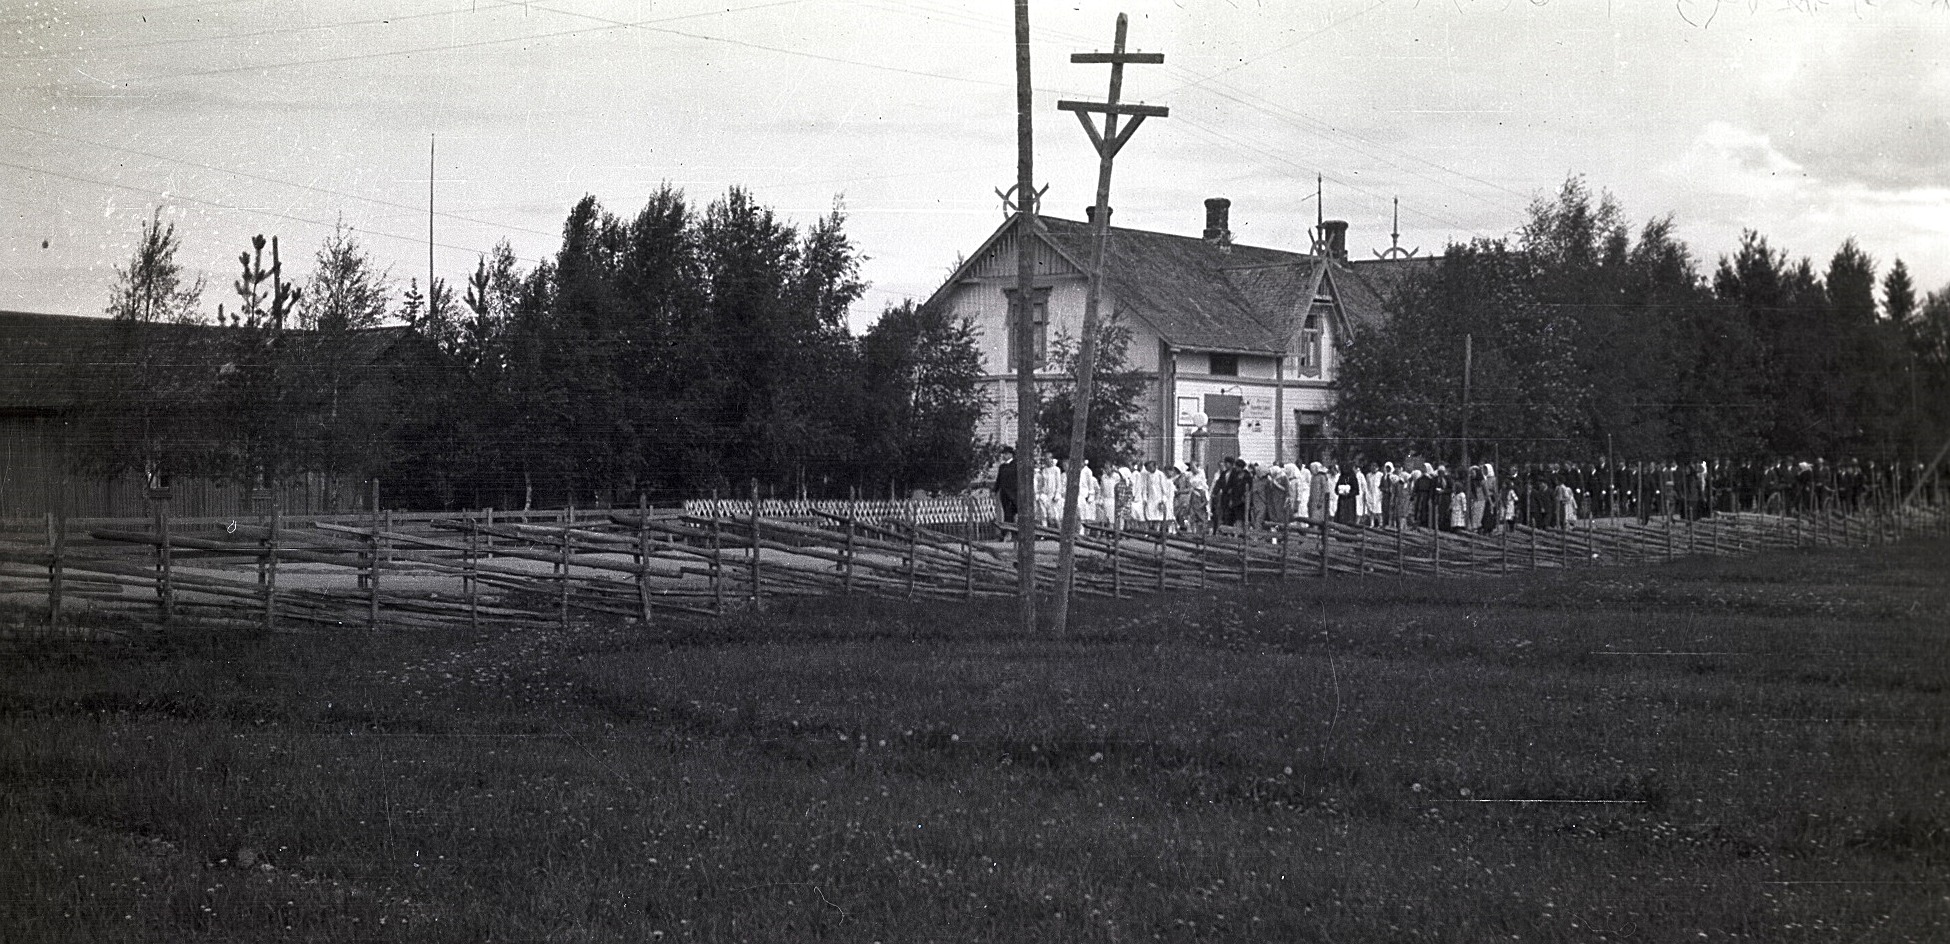 På fotot från midsommaren 1928 ser vi den långa raden av konfirmander, som startar "tenn fö Kaljohanas", alltså vid Charles Ulfves affär nere i kyrkbacken. Längs landsvägen syns en tidstypisk gärdesgård.